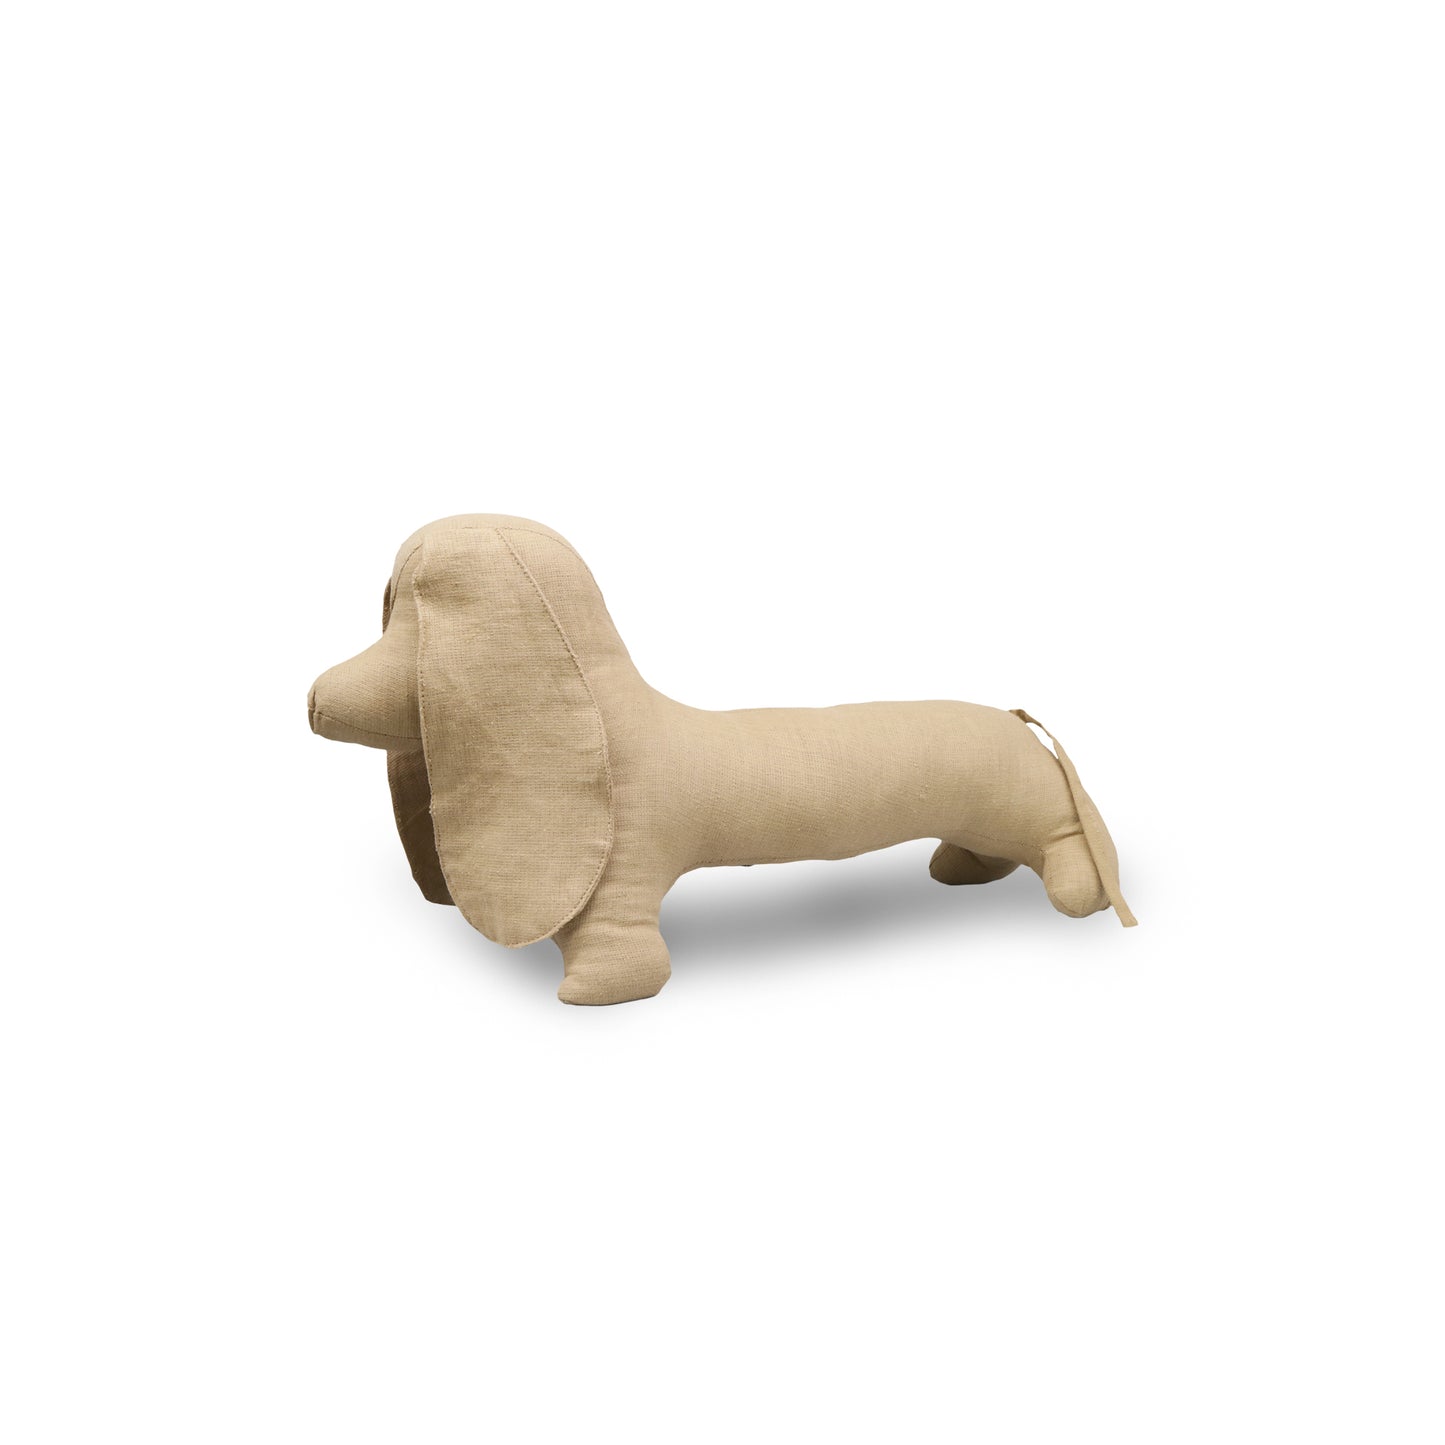 Vintage Fabric Stuffed Animal | Dog